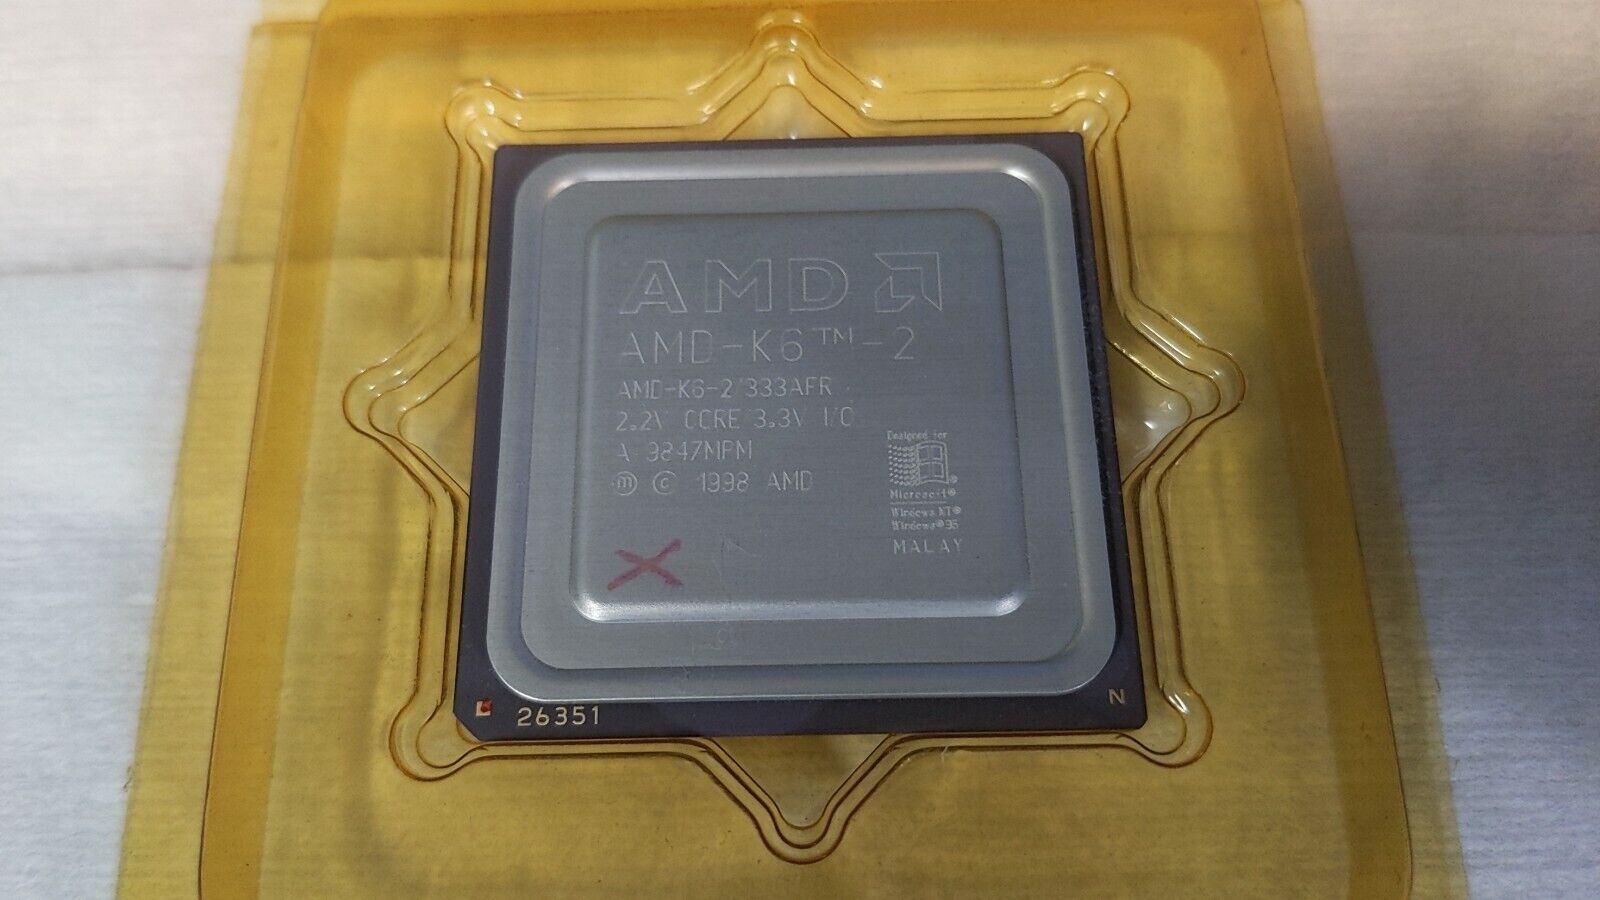 AMD-K6-2 333AFR K6-2 333AFR 333mhz Socket 7 CPU  GOLD